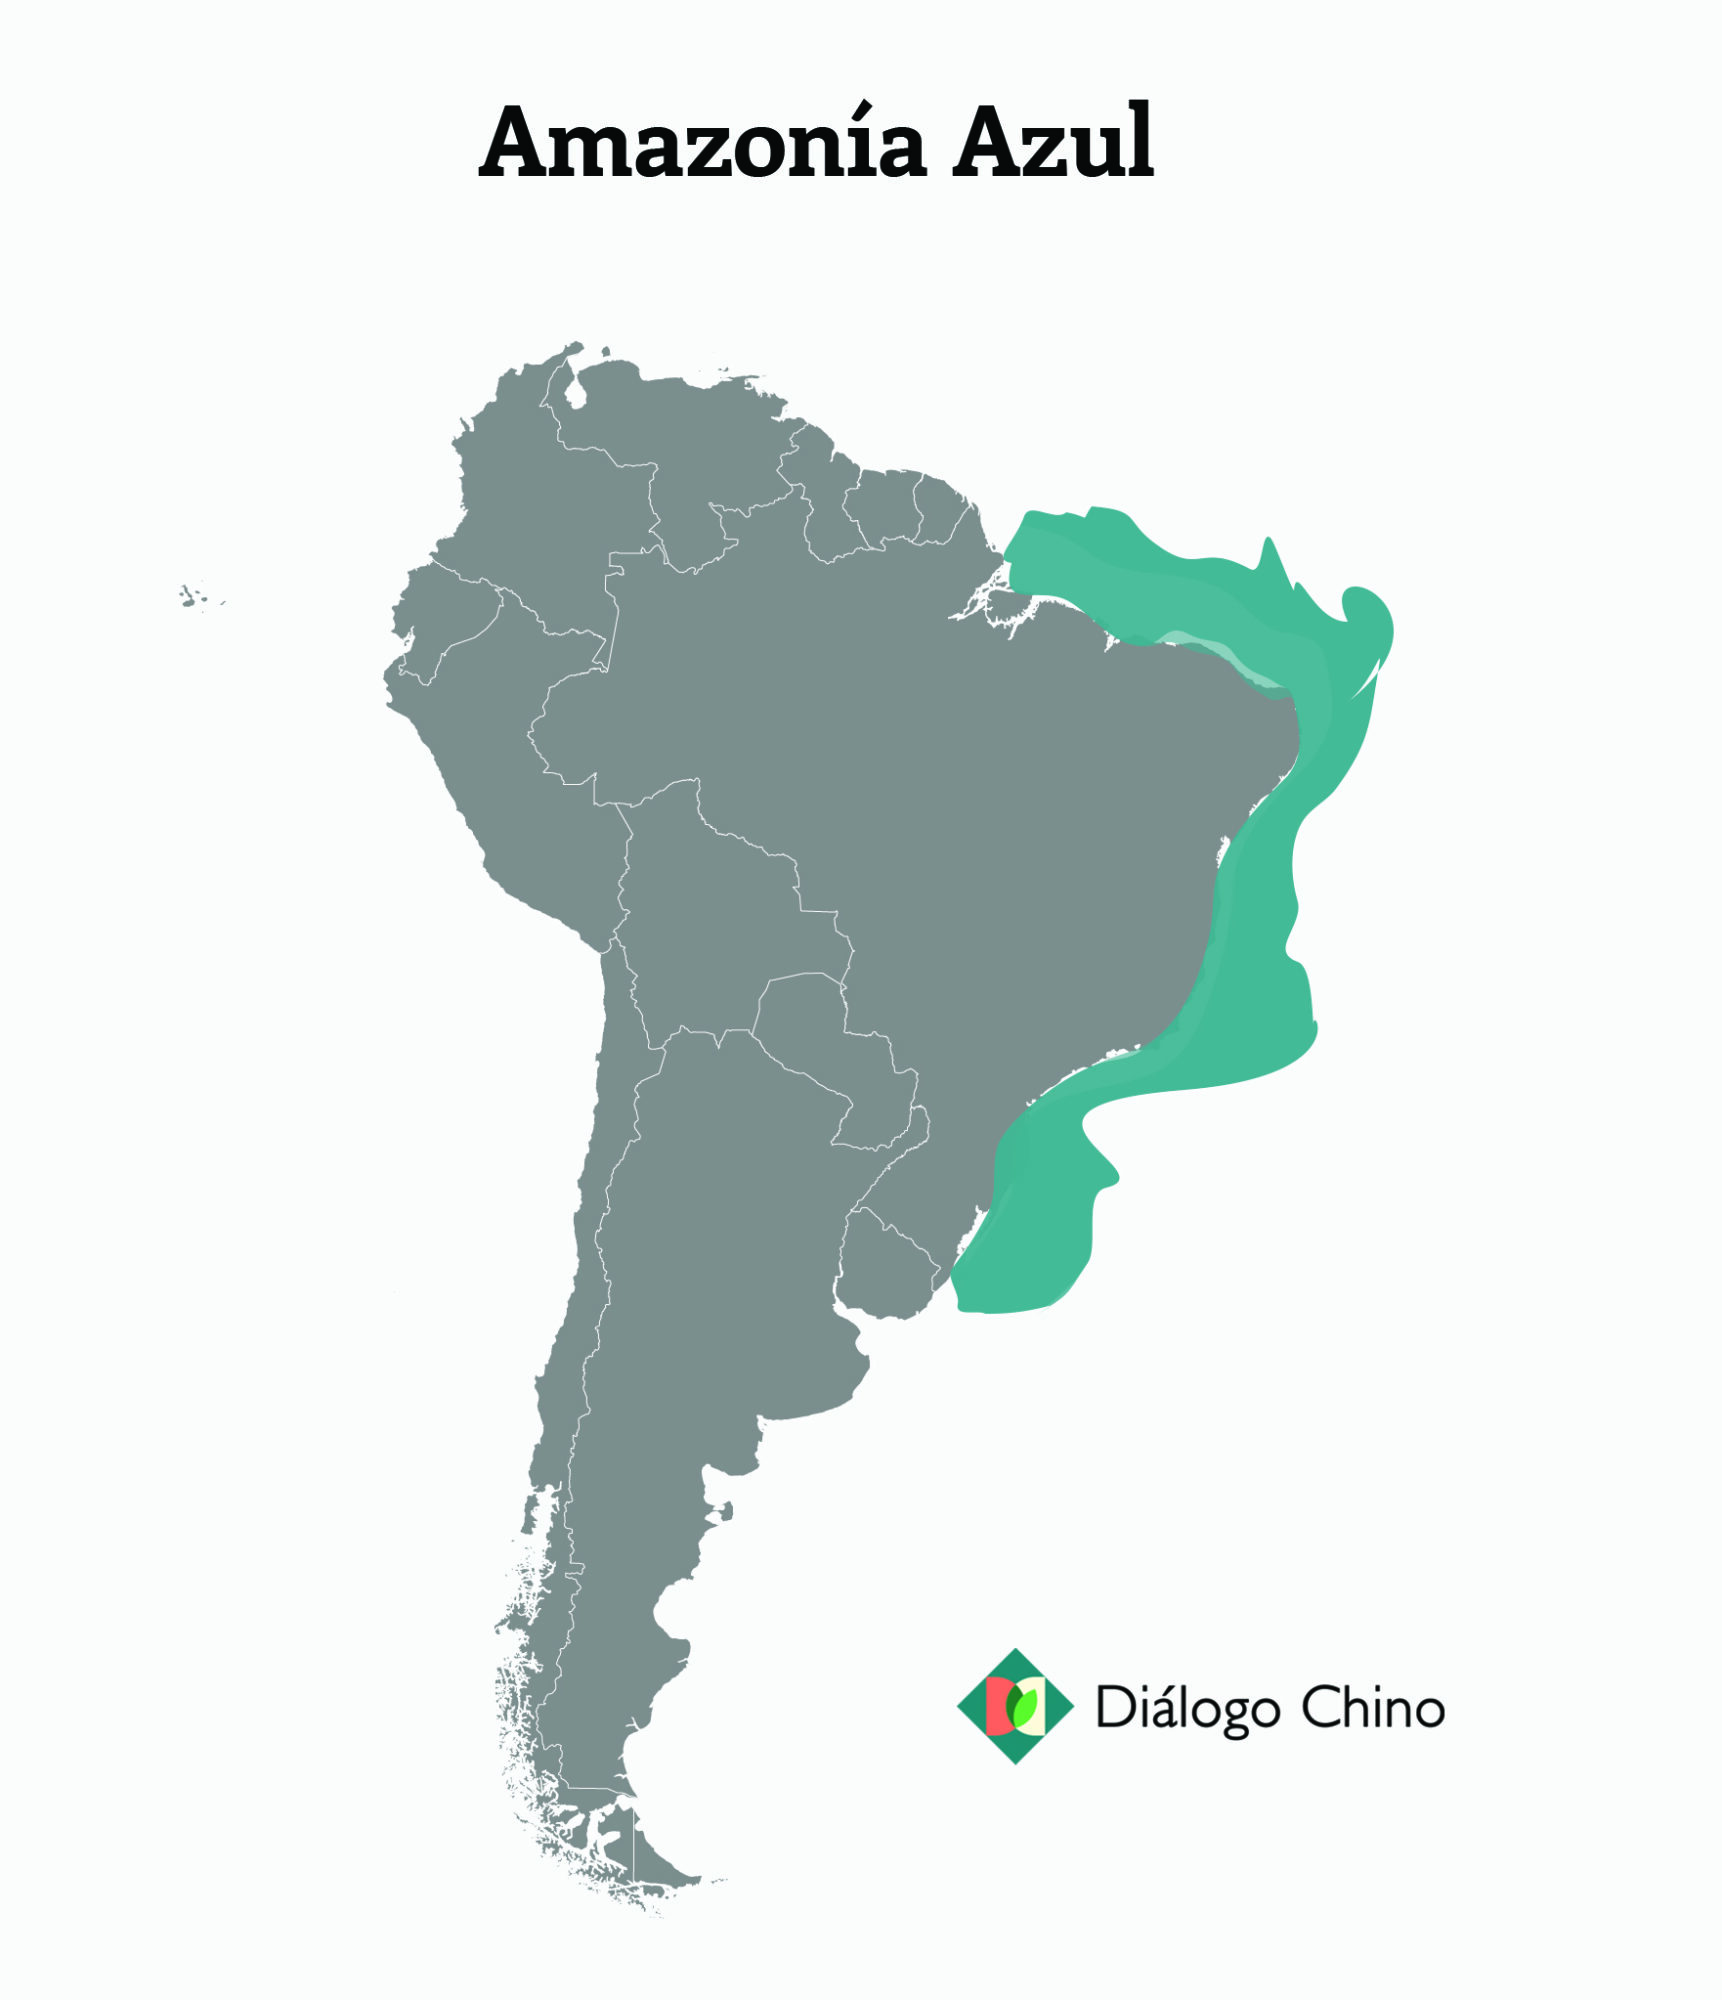 mapa de Sudamérica con la Amazonía azul marcada en azul